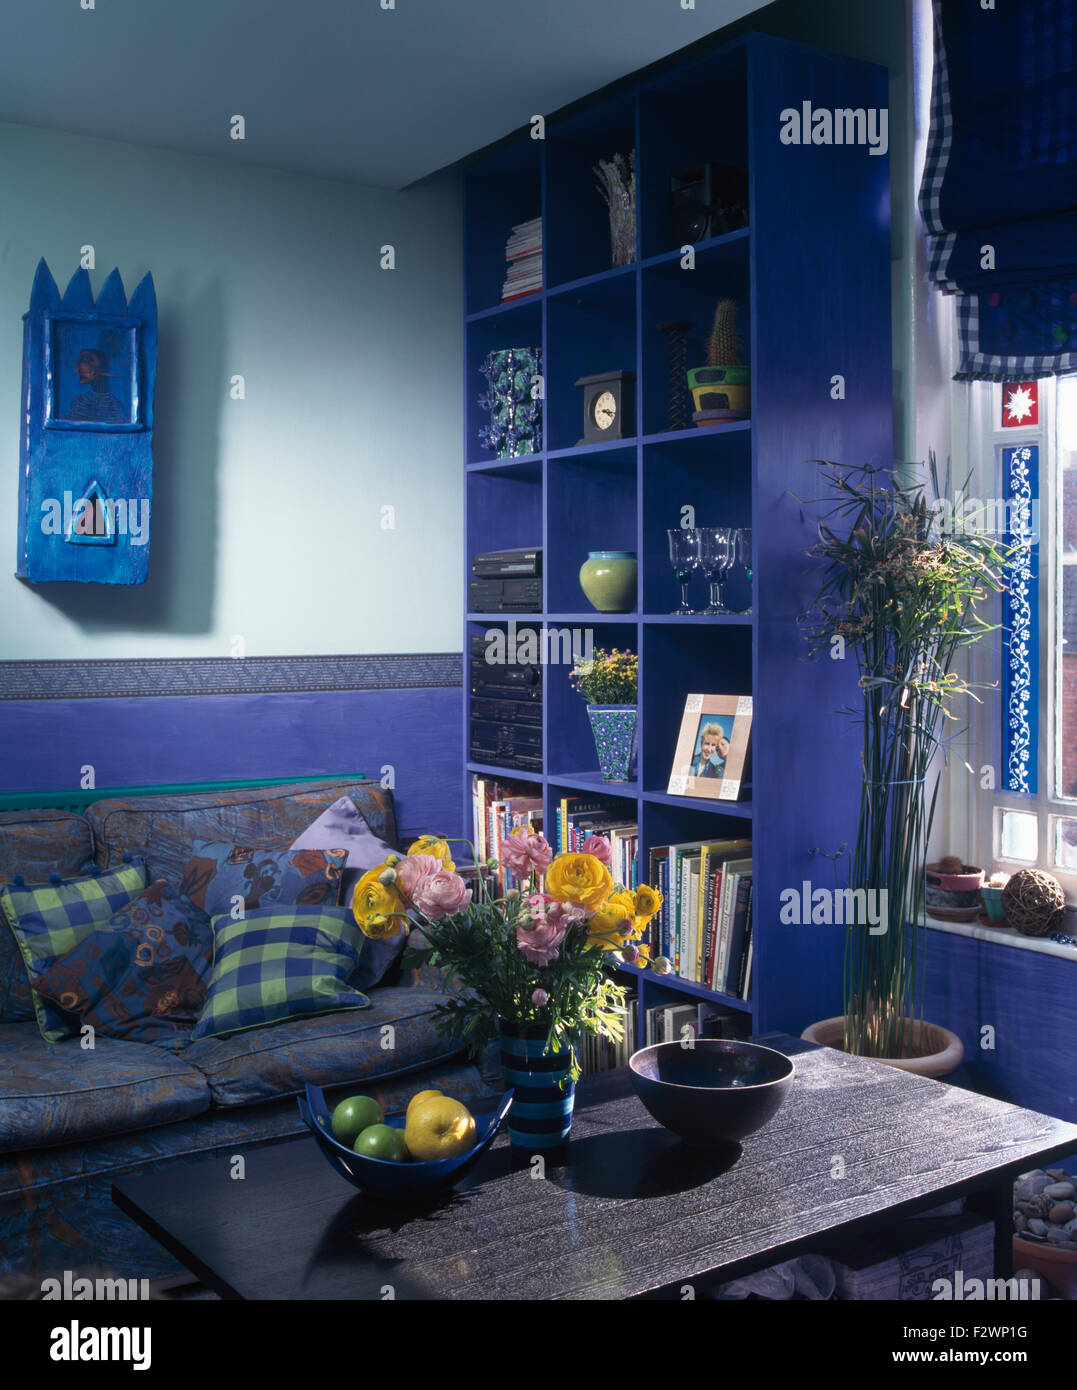 Pequeño armario de pared pintada de azul y azul brillante cube estanterías en azul brillante 90 salón Foto de stock